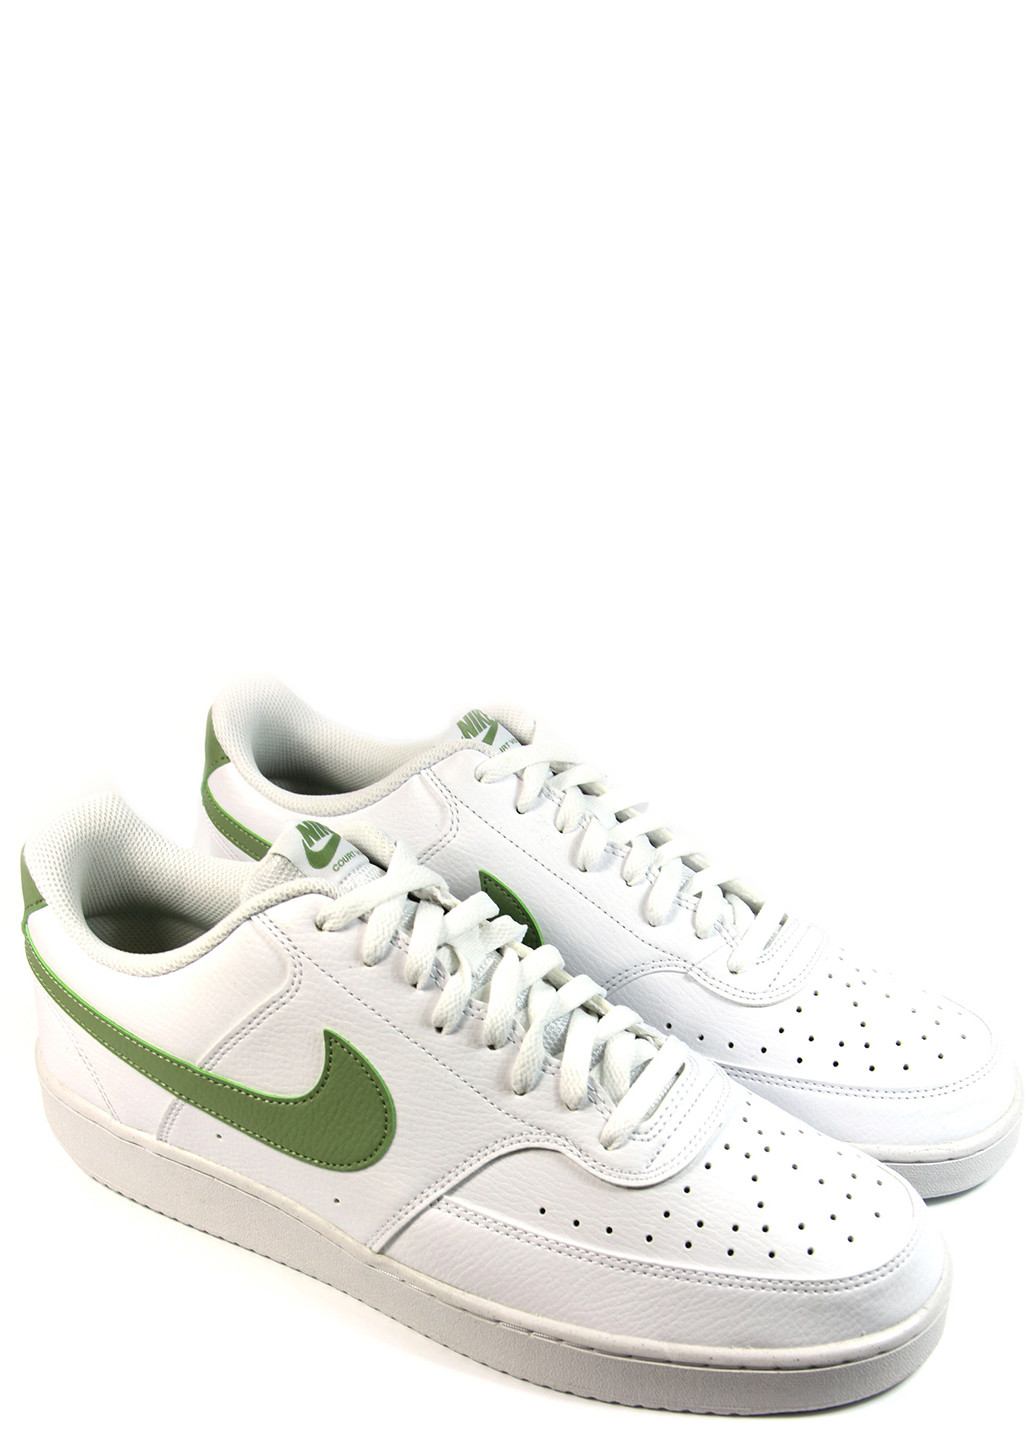 Белые демисезонные мужские кроссовки court vision low fd0781-100 Nike